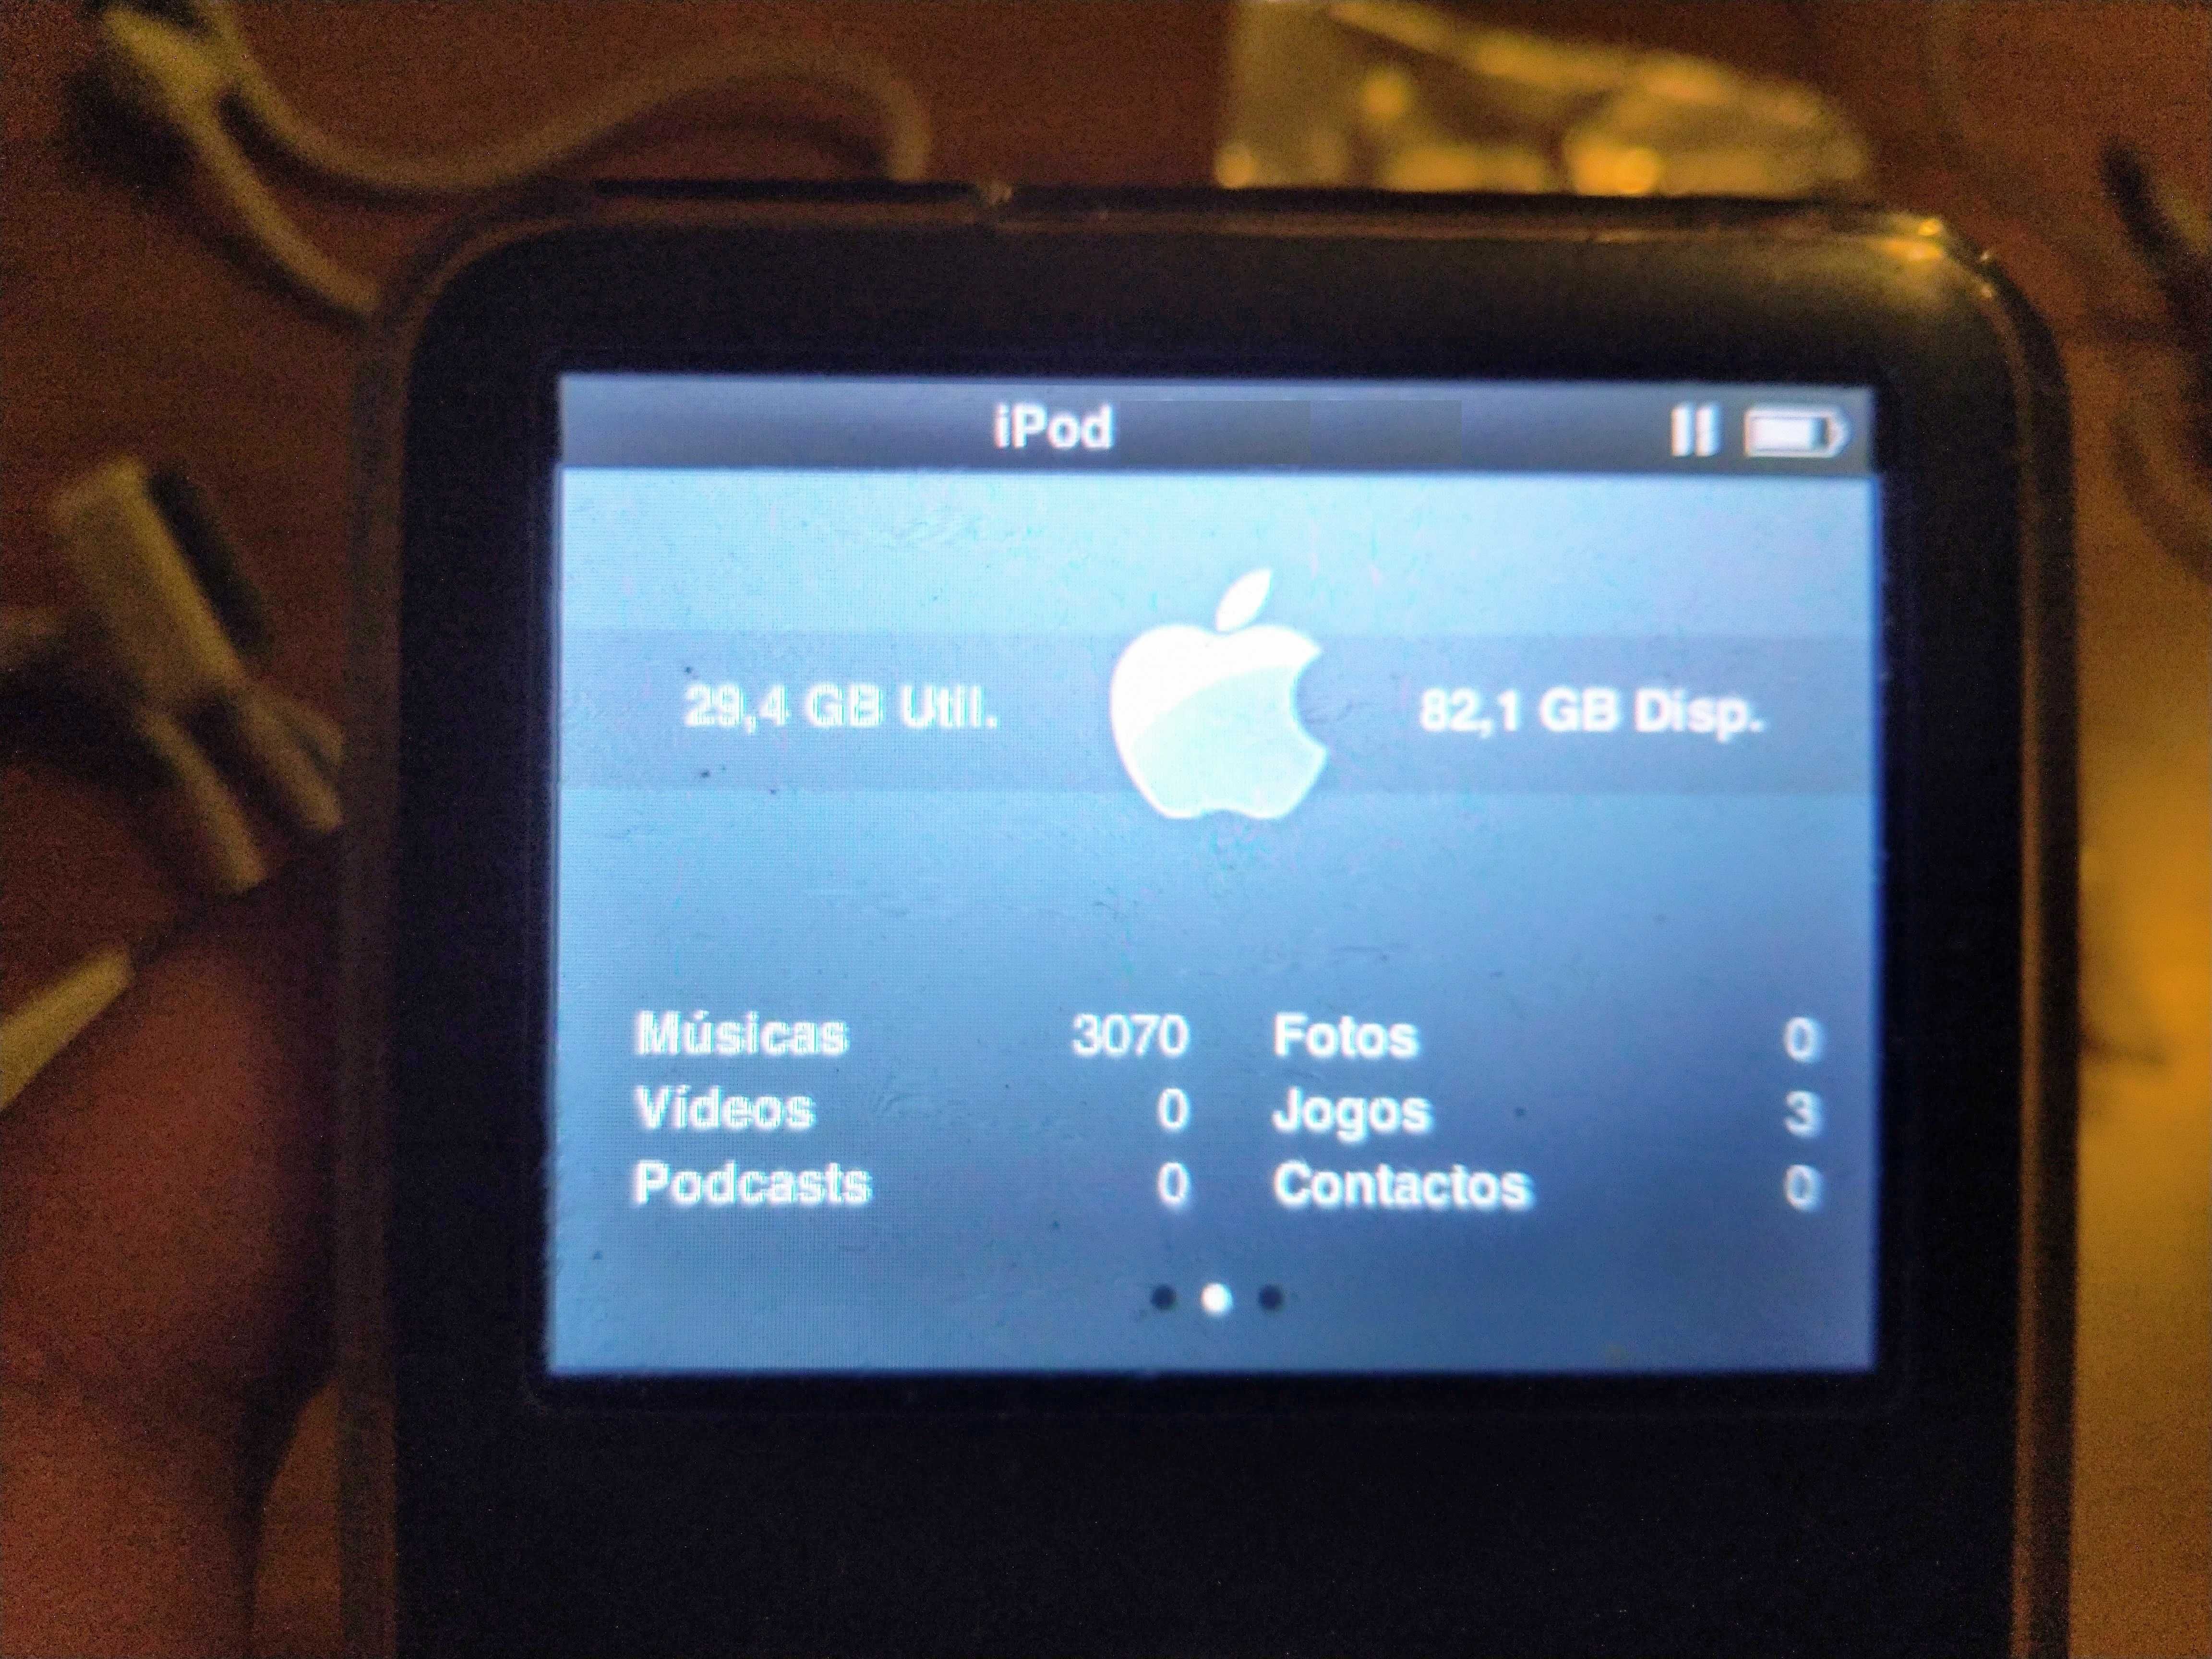 APPLE iPod Classic de 128GB, Edição Limitada da Banda U2 (Como Novo)